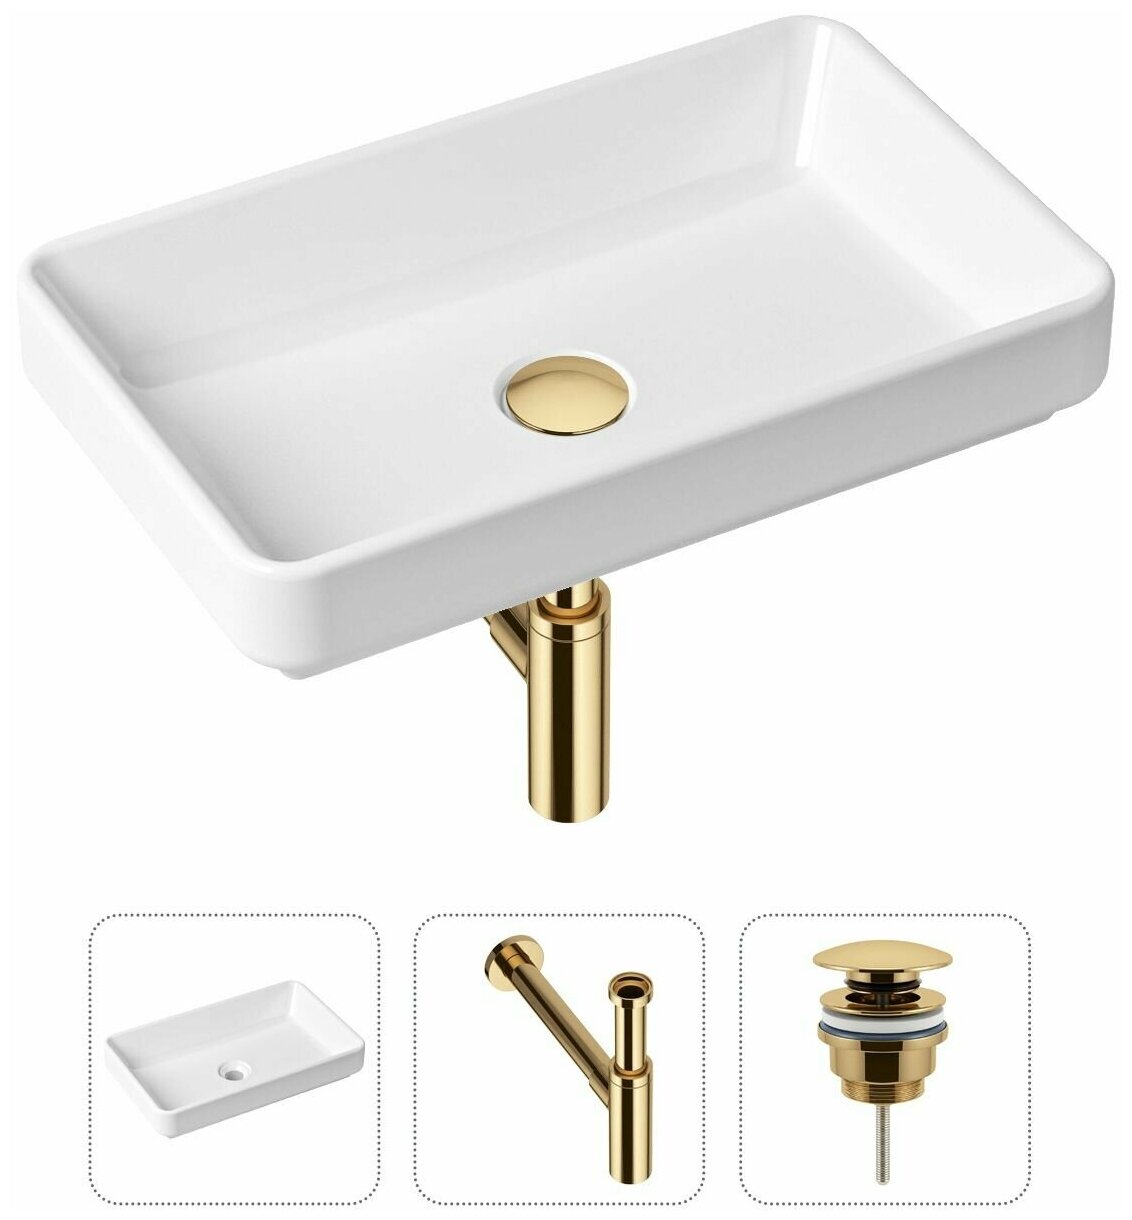 Комплект 3 в 1 Lavinia Boho Bathroom Sink 21520148: накладная фарфоровая раковина 55 см, металлический сифон, донный клапан